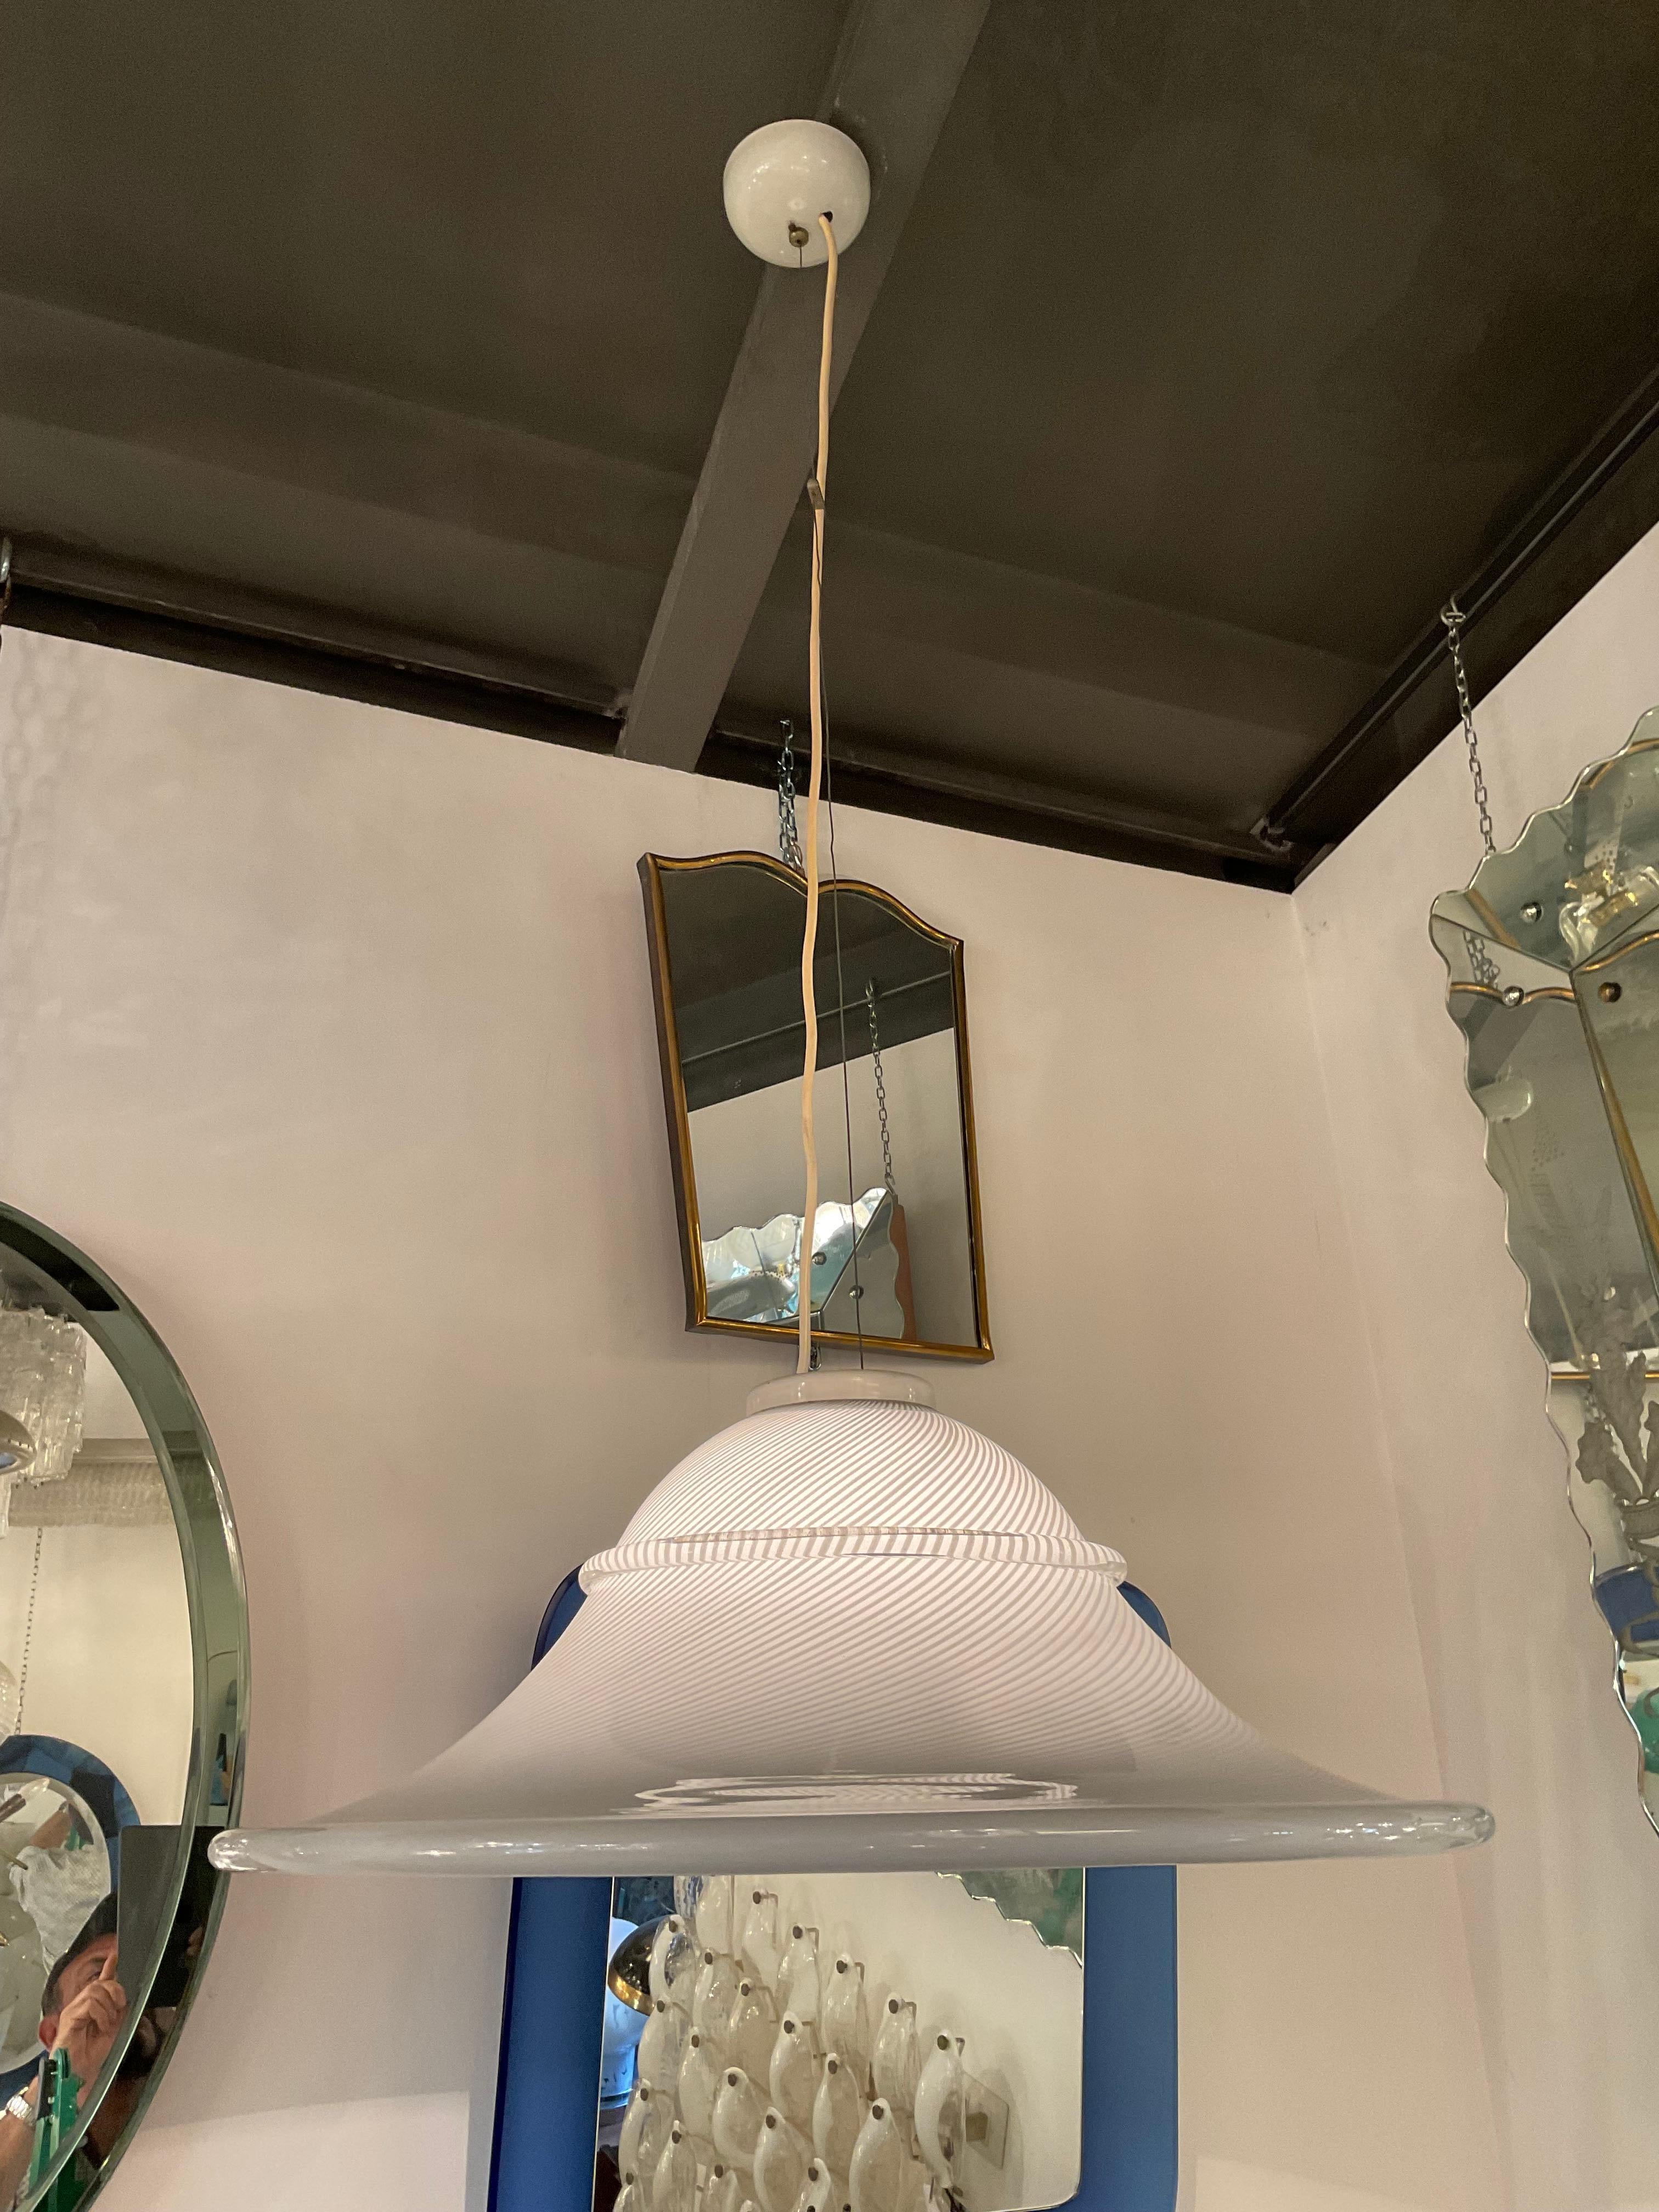 Paolo VENINI - Lampadaire de grande qualité comme toutes les lampes de VENINI fabriquées à MURANO, Made in ITALY.
La lampe est en parfait état de conservation, fonctionnelle.